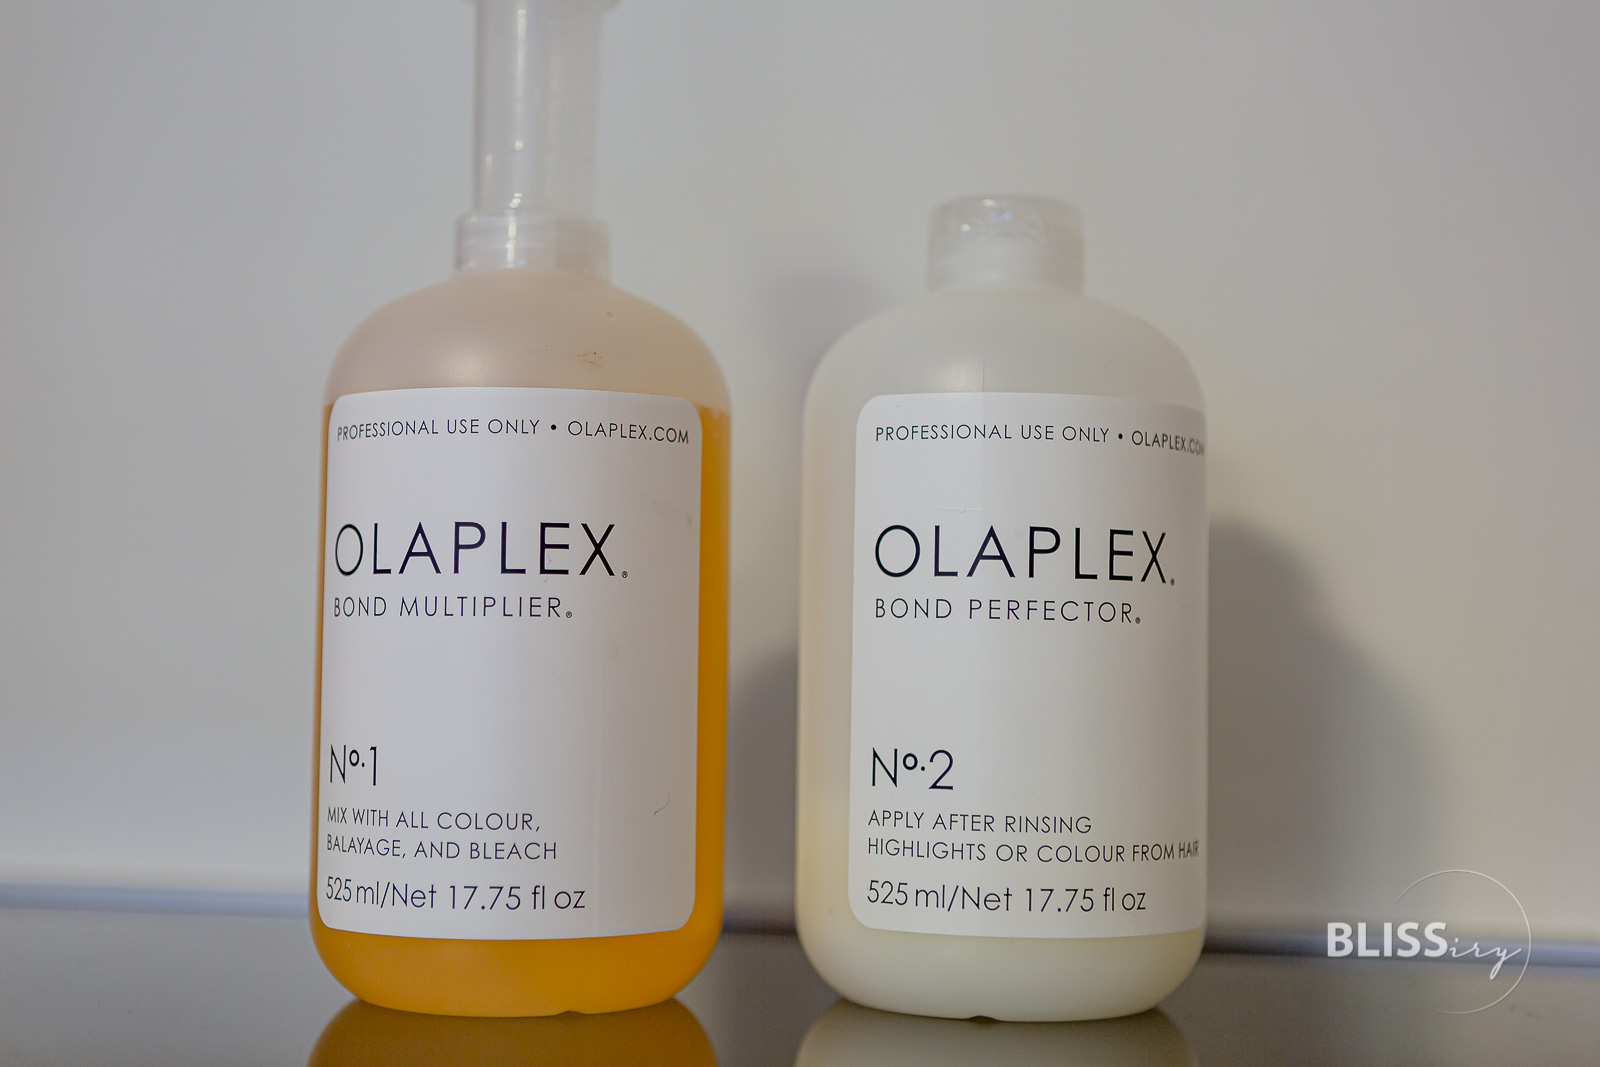 Olaplex Erfahrungen - Haare aufhellen und färben